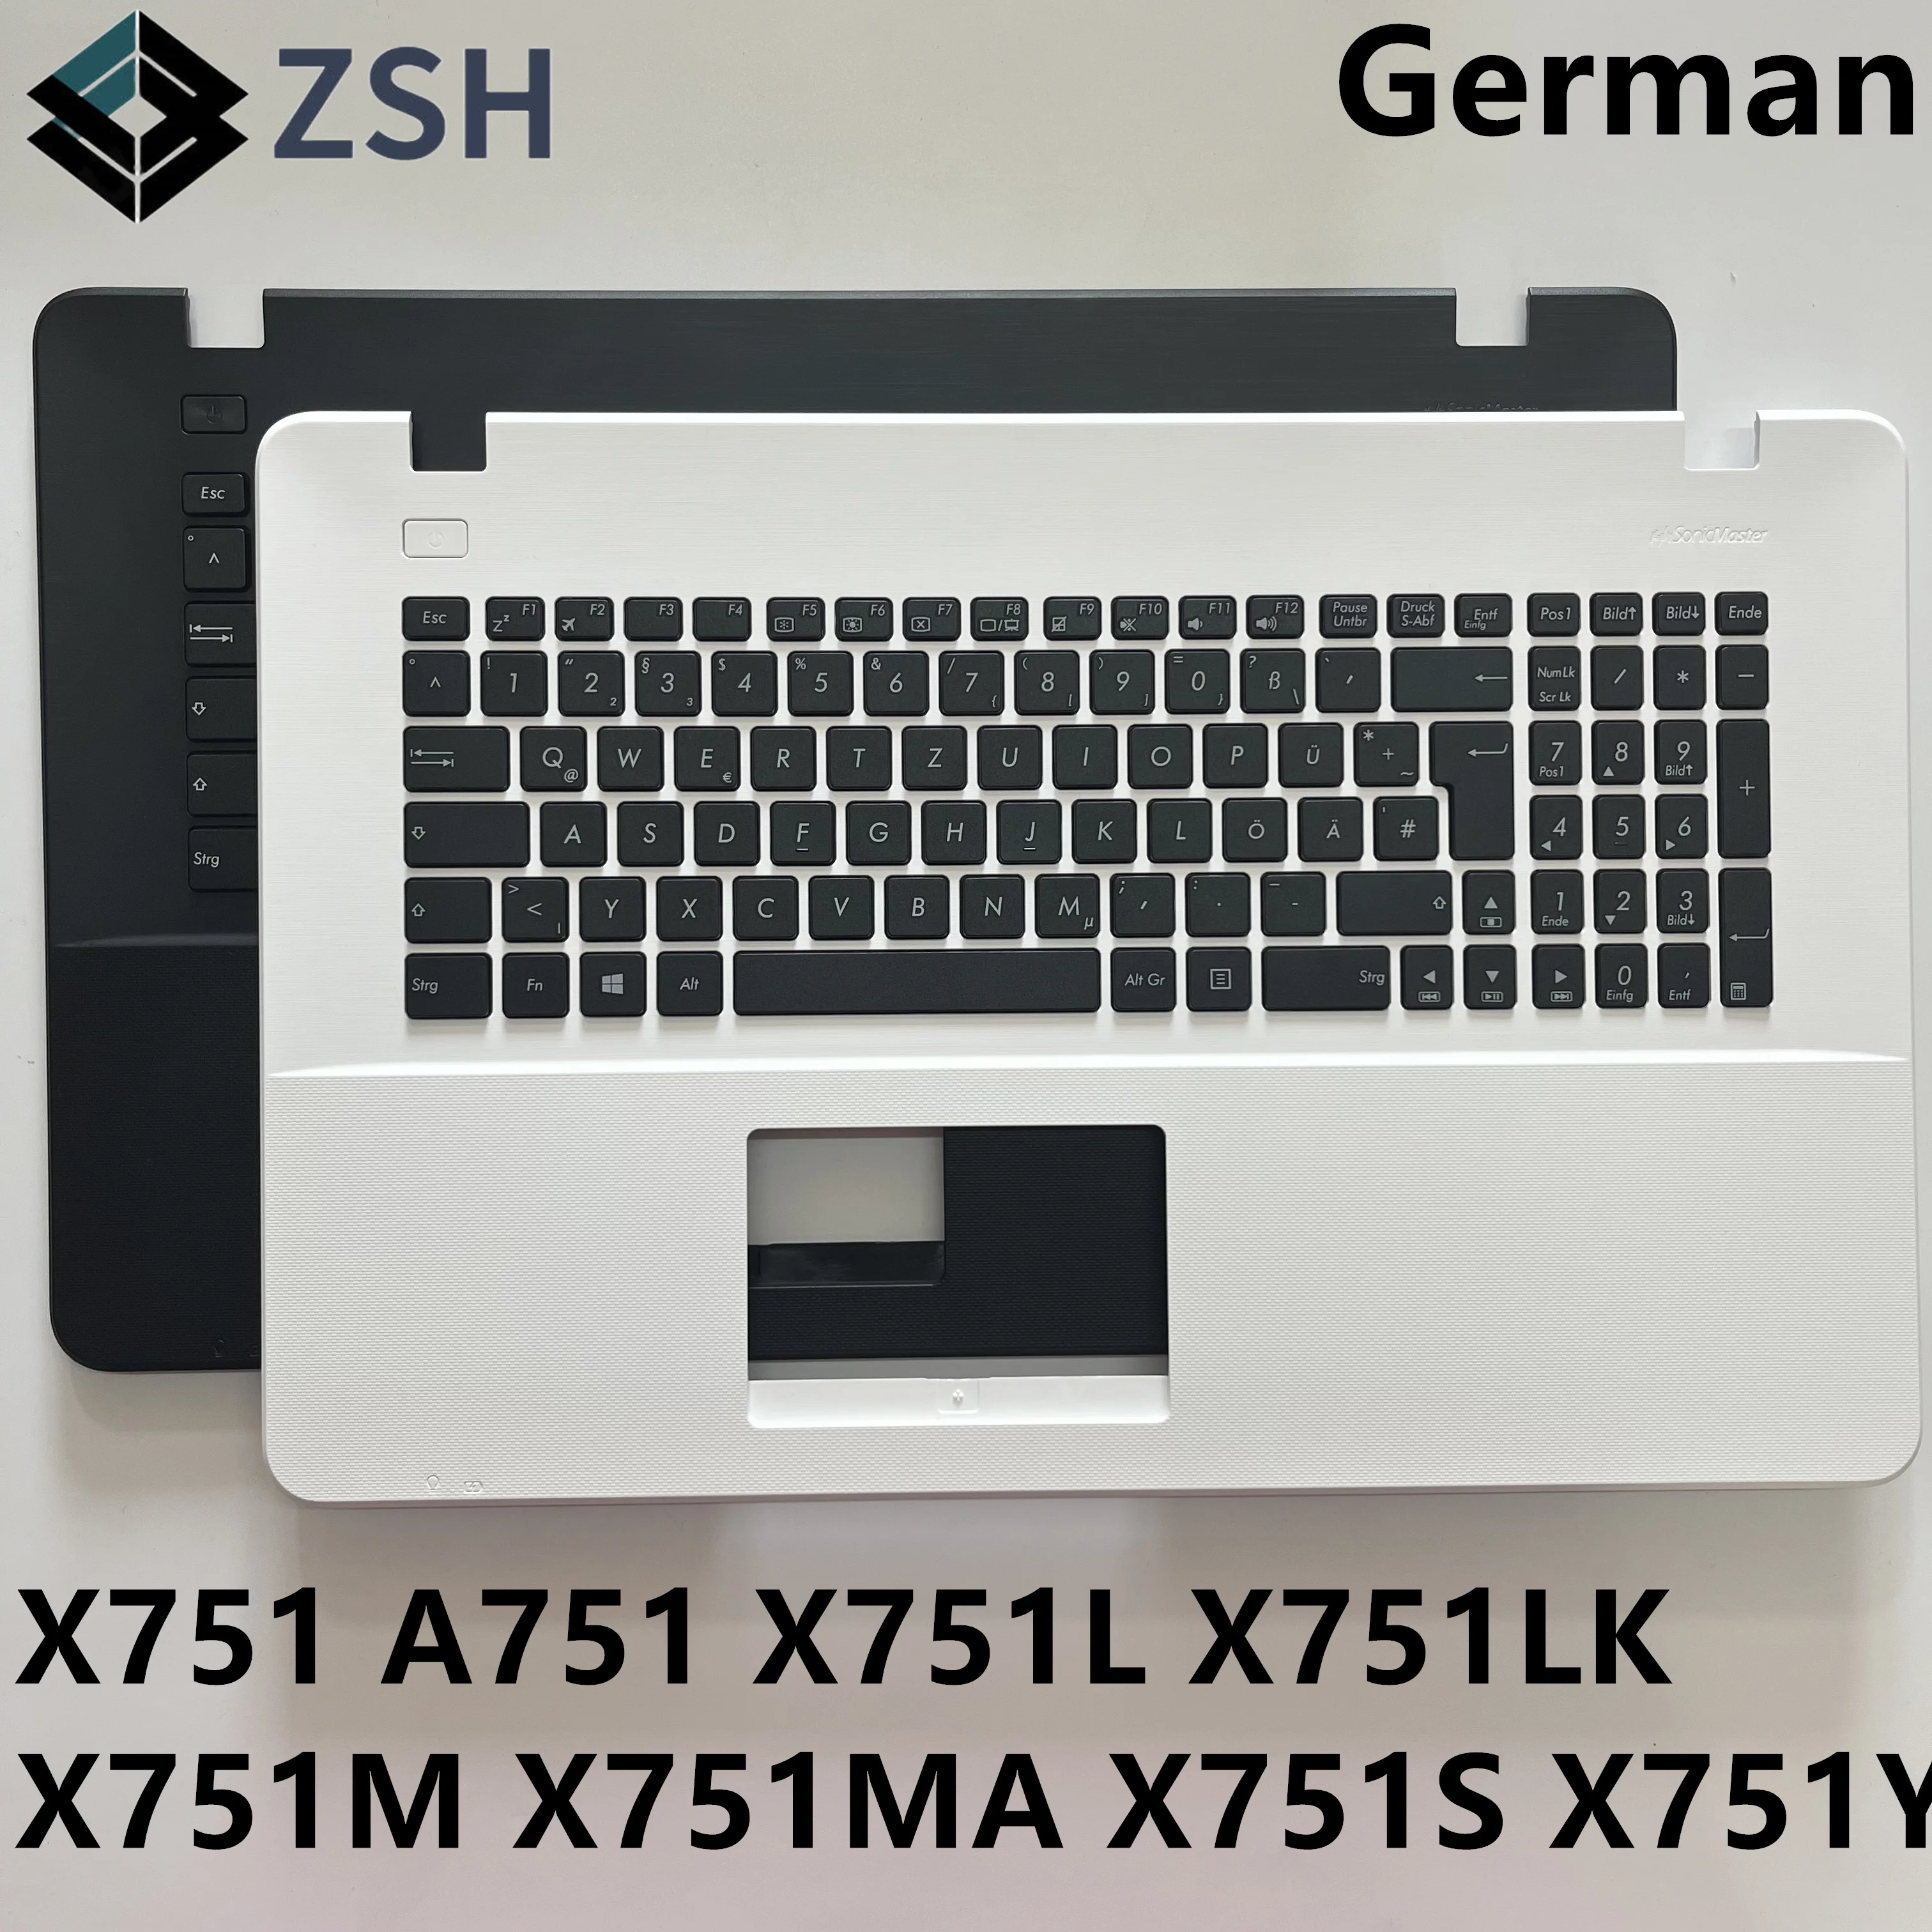 GR GE Немецкая клавиатура тачпад подставка для рук клавиатуры для Asus A751 x751 x751l x751lk x751lk x751ma x751y Клавиатура ноутбука C крышкой Изображение 0